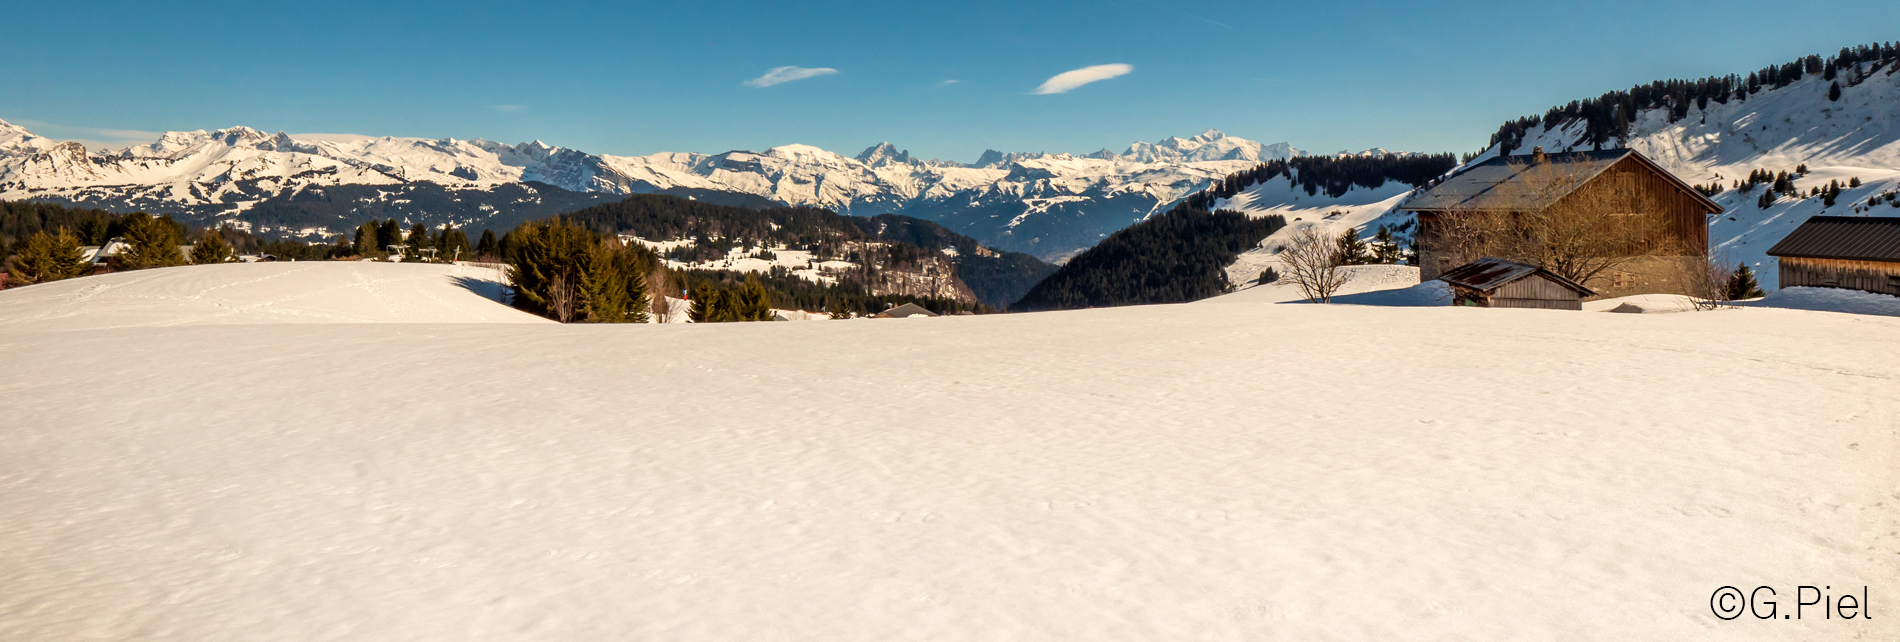 Chalet - Vue sur le Mont-Blanc - Praz de Lys Sommand - Gilles Piel